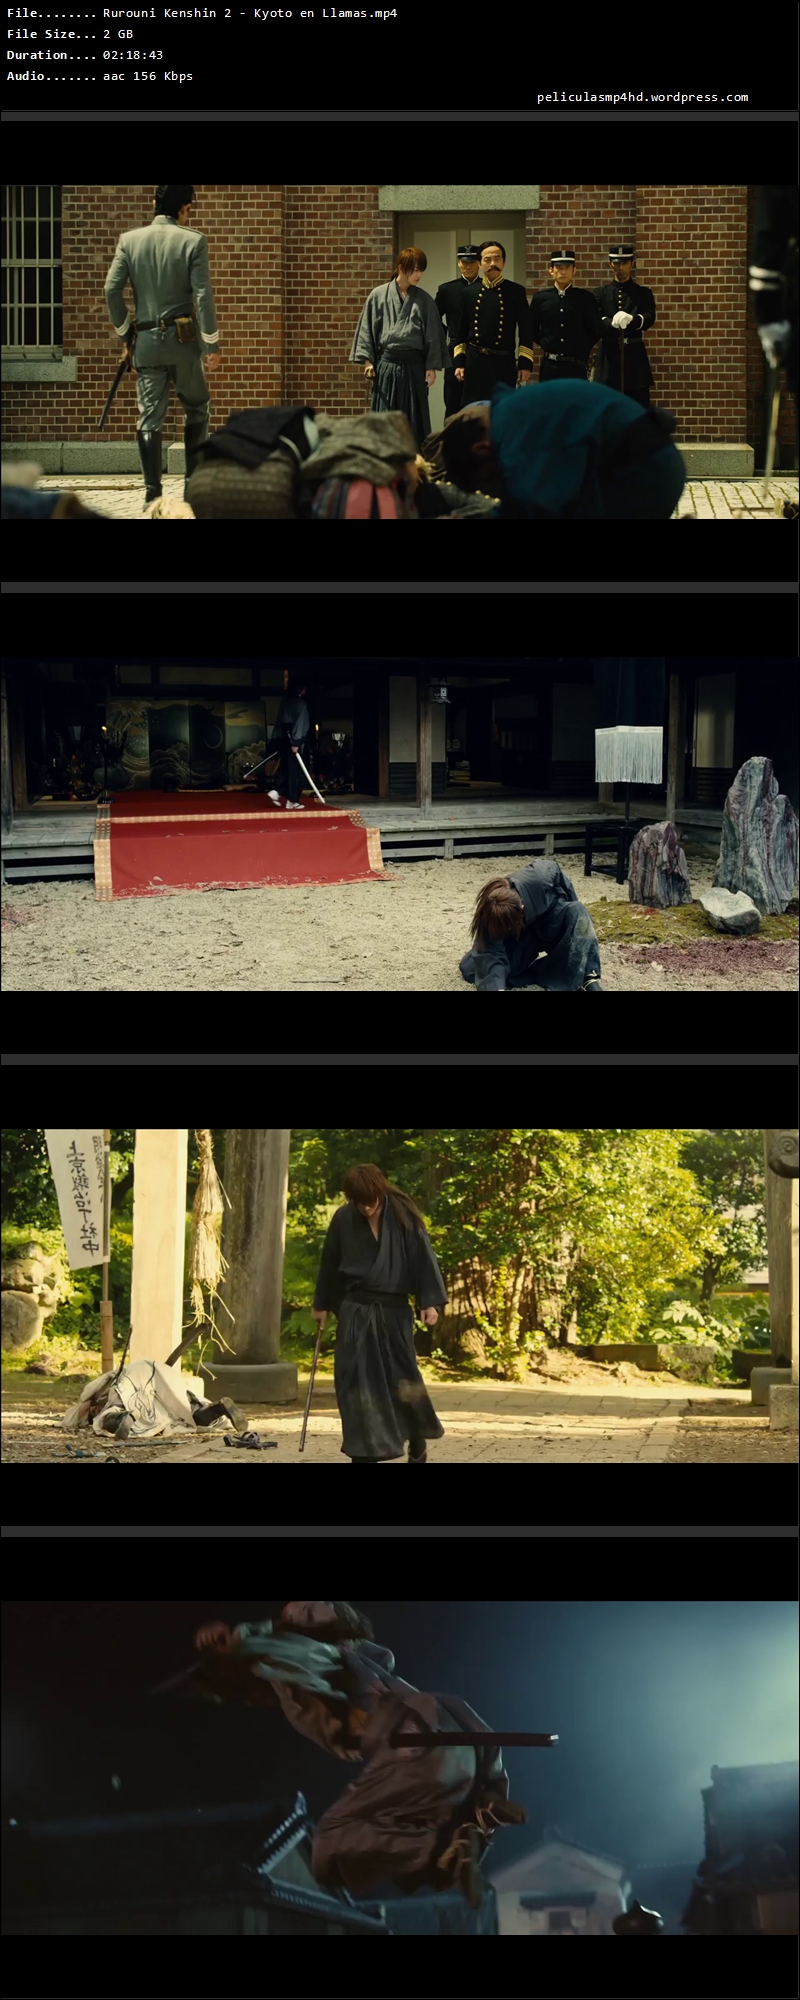 Rurouni Kenshin 2 - Kyoto en Llamas